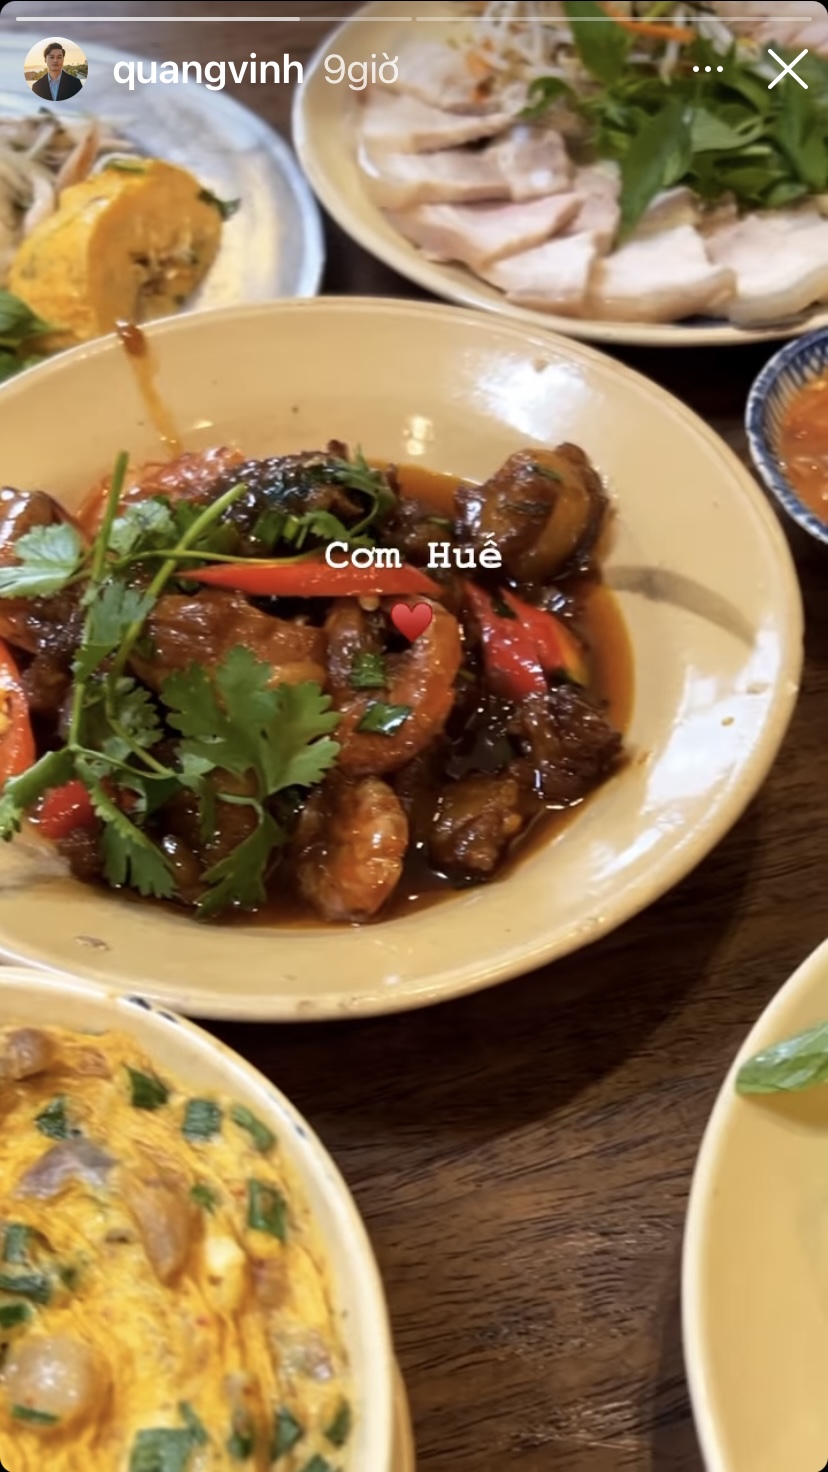 Bữa cơm Huế của Quang Vinh hôm nay có tôm rim thịt, trứng đúc thịt, thịt luộc... tuy đơn giản nhưng rất 'đưa' cơm.